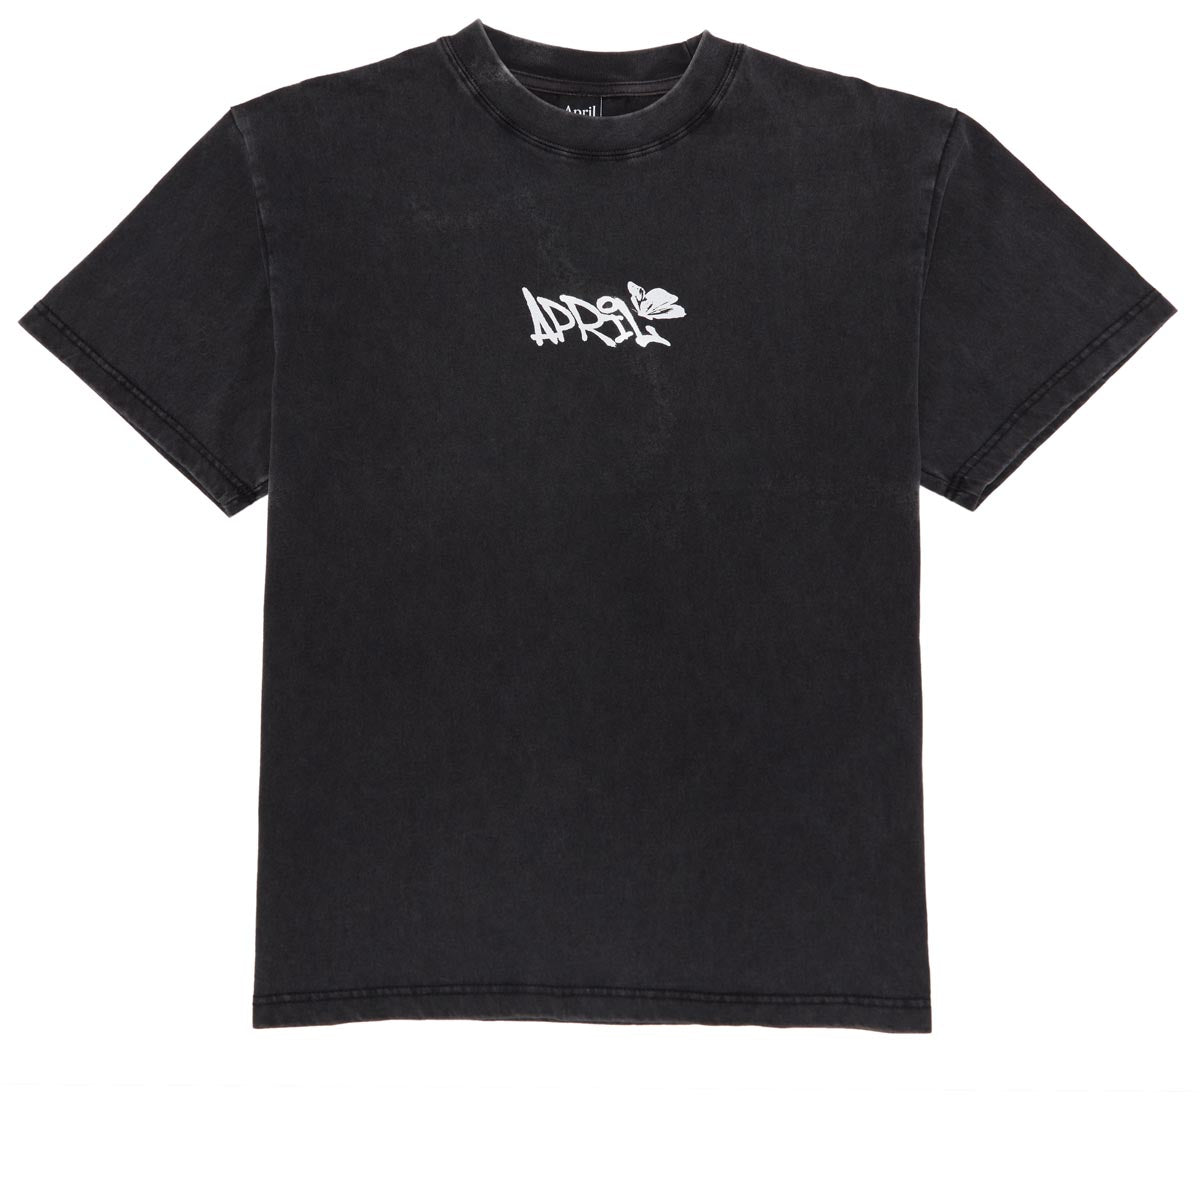 April Sketch  T-Shirt - Vintage Black image 1